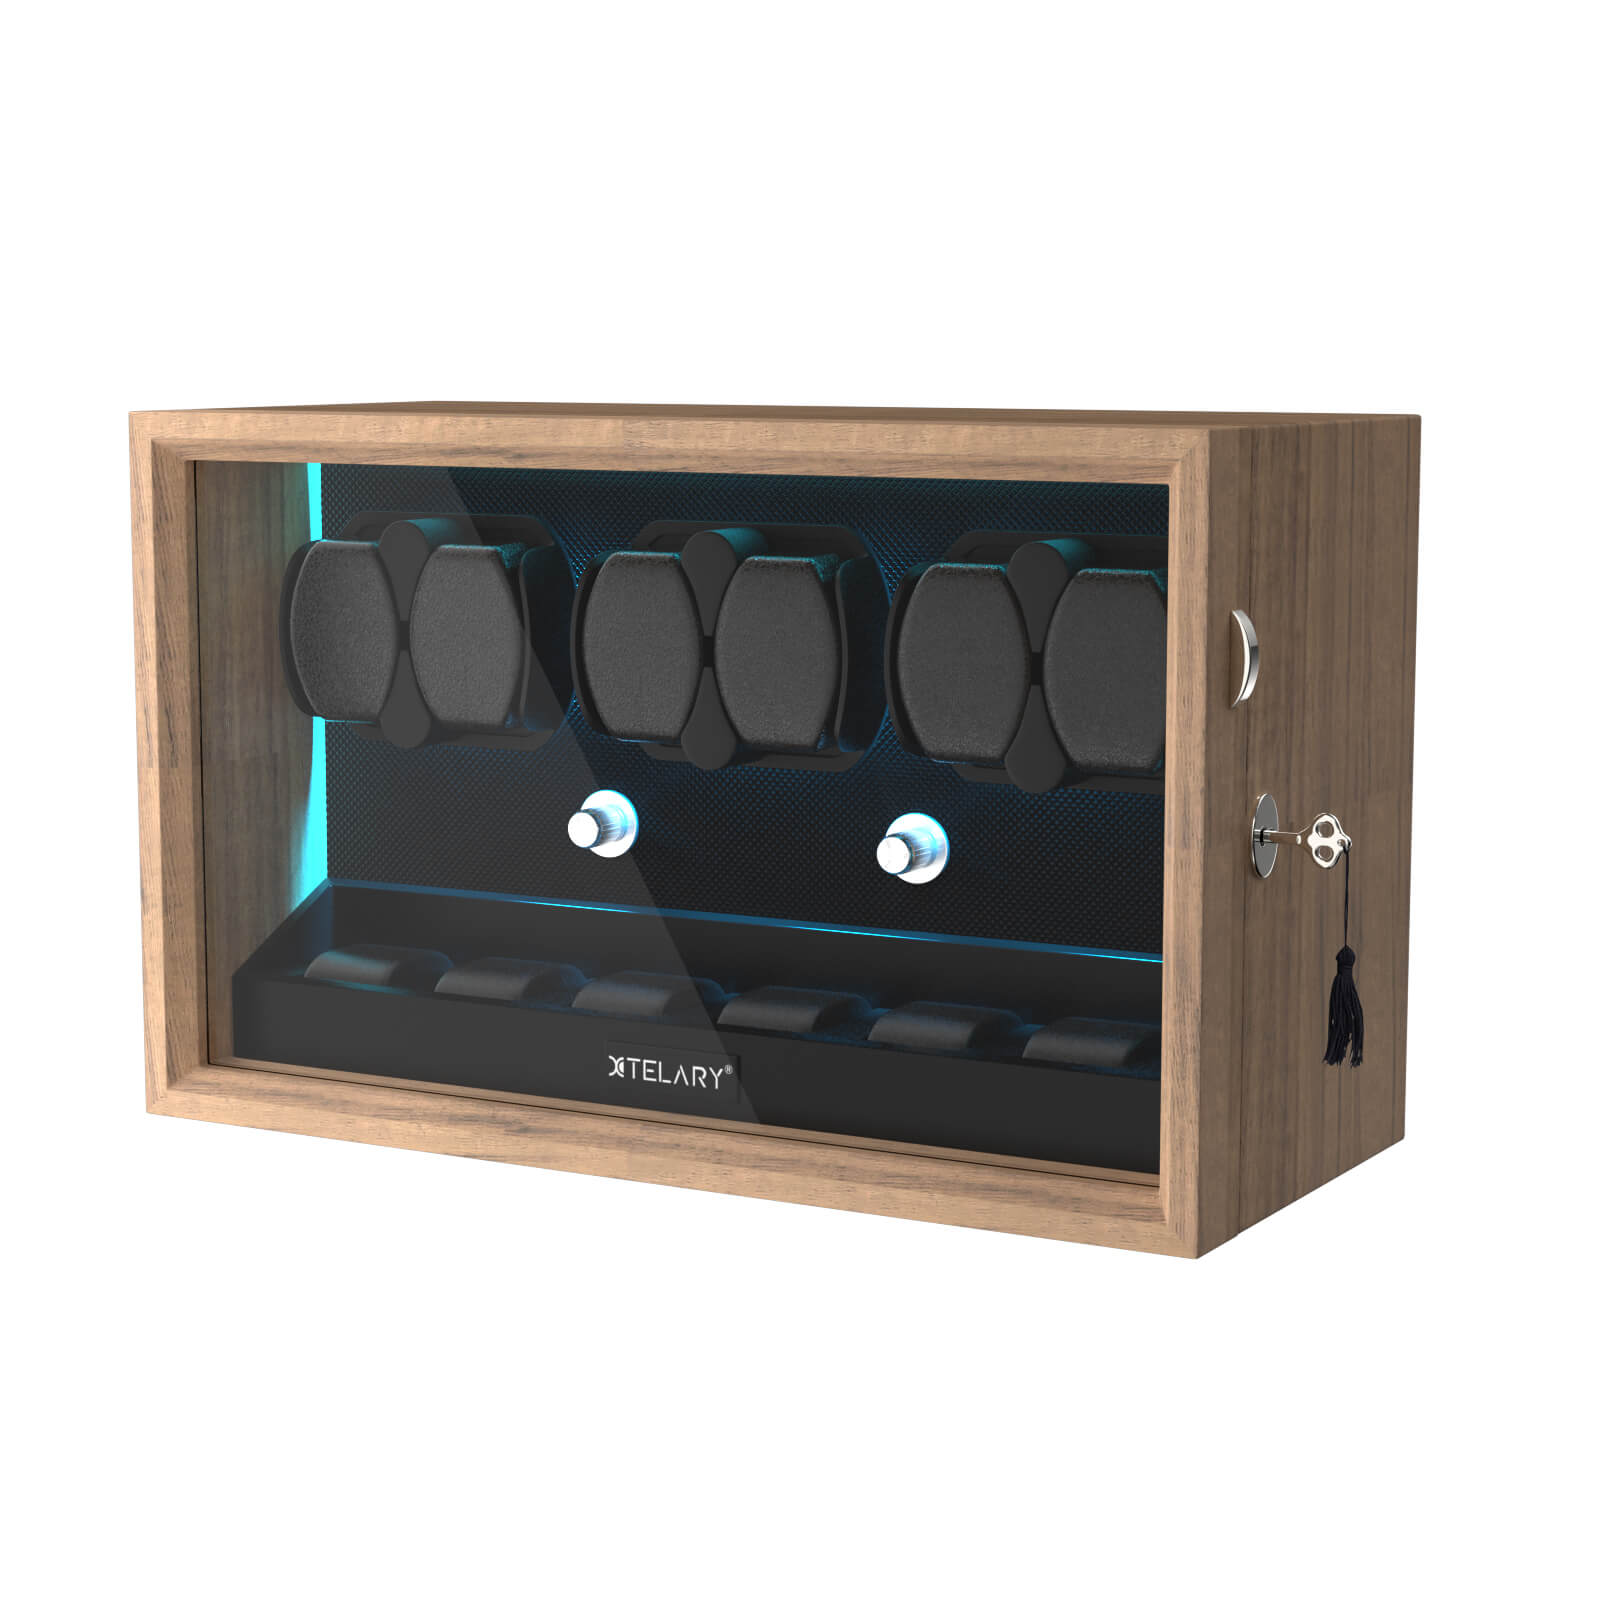 6 Remontoirs de Montres pour Montres Automatiques avec 6 Rangements Supplémentaires Lumière LED Bleue Aurora - Grain